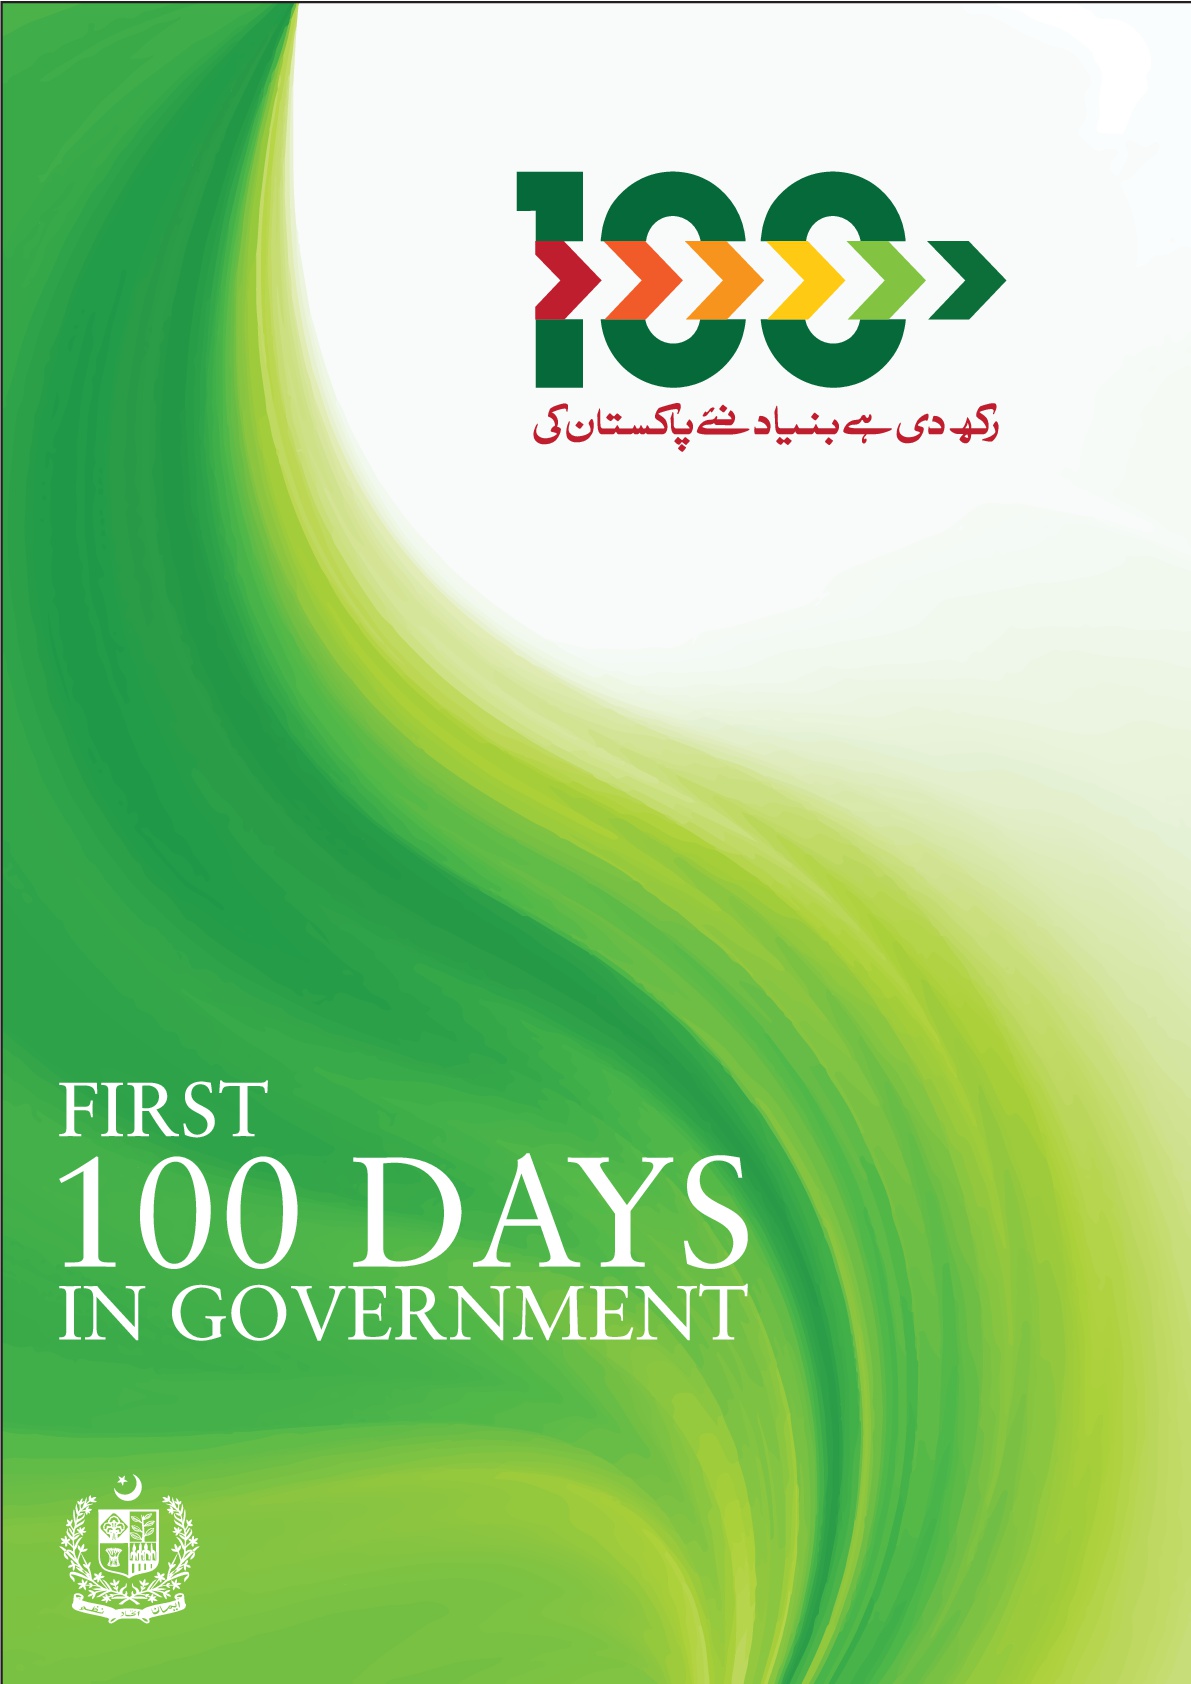 حکومت کی 100 روزہ کارکردگی۔۔۔ لائیوسٹاک اور ایگریکلچر سیکٹر